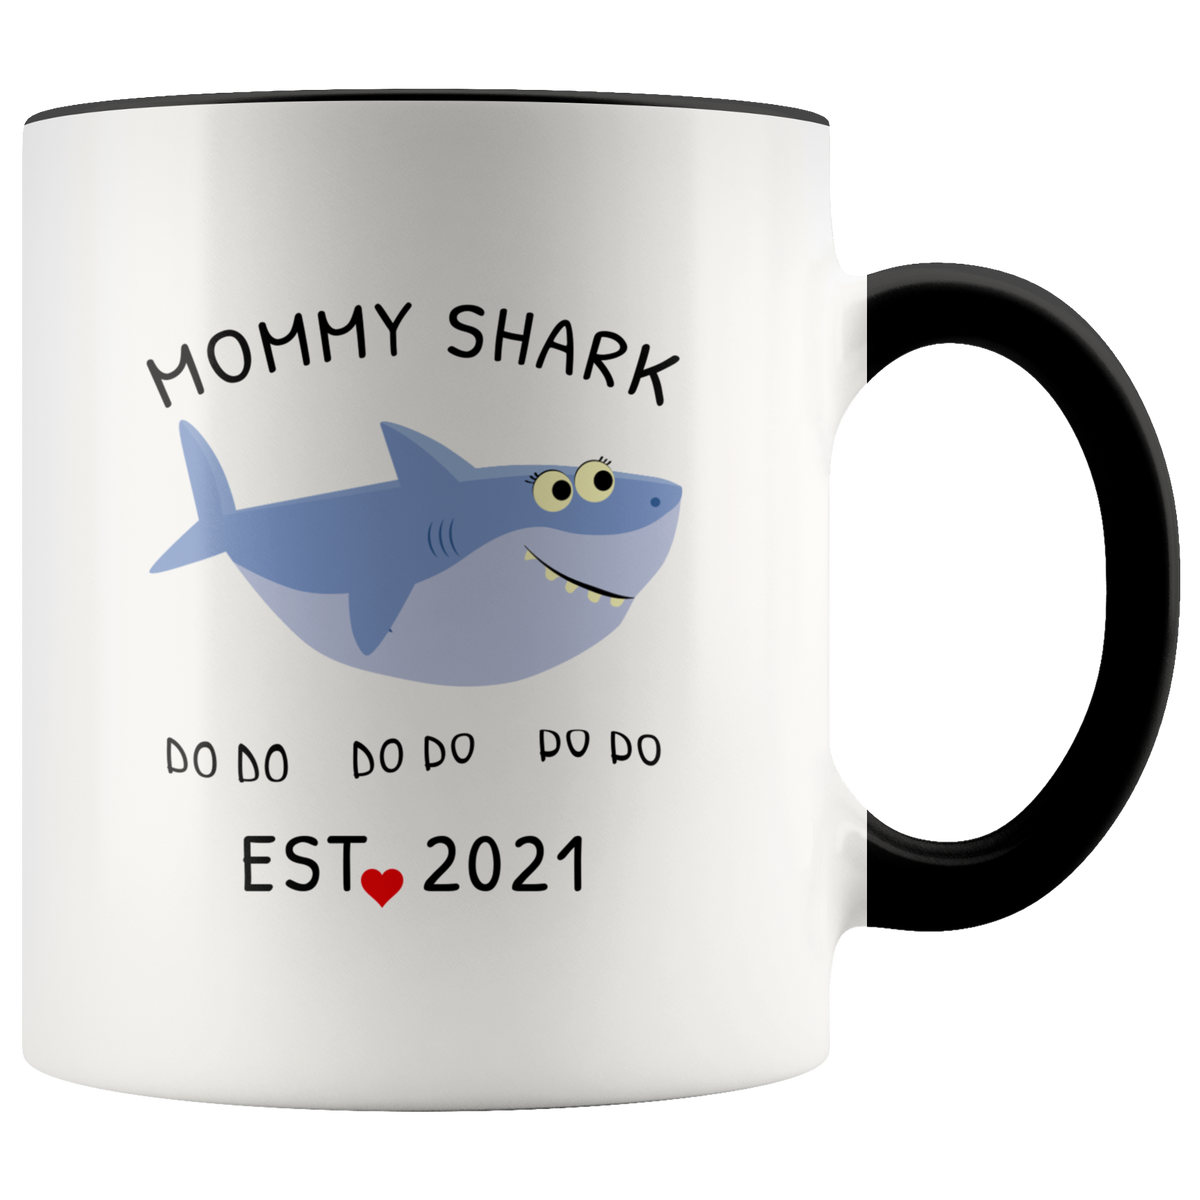 New Expecting Mom Mug Gift - Mommy Shark EST 2021